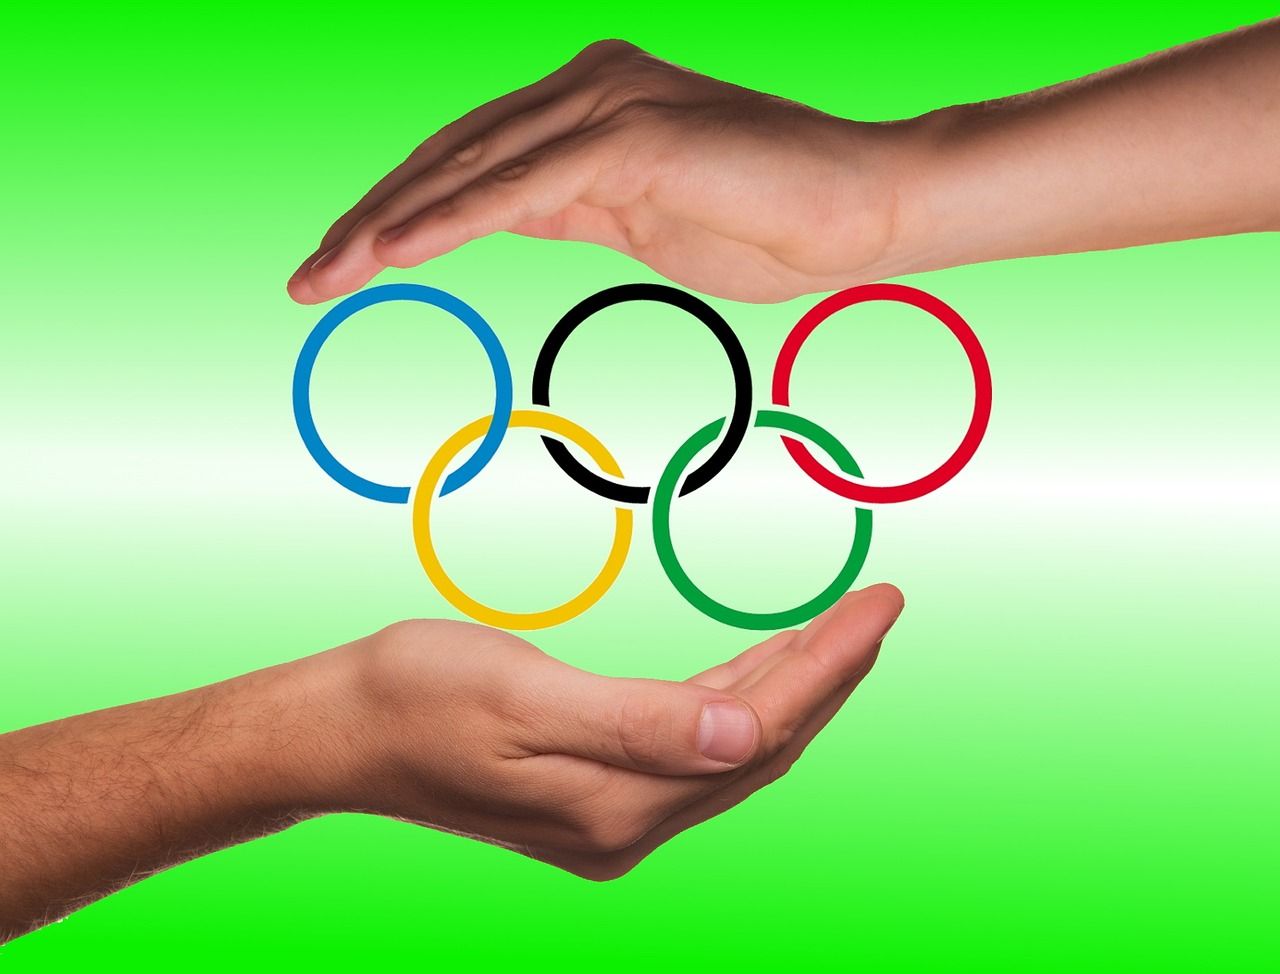 Mezinárodní olympijský výbor vyzván k ukončení sponzoringu prodejci slazených nápojů